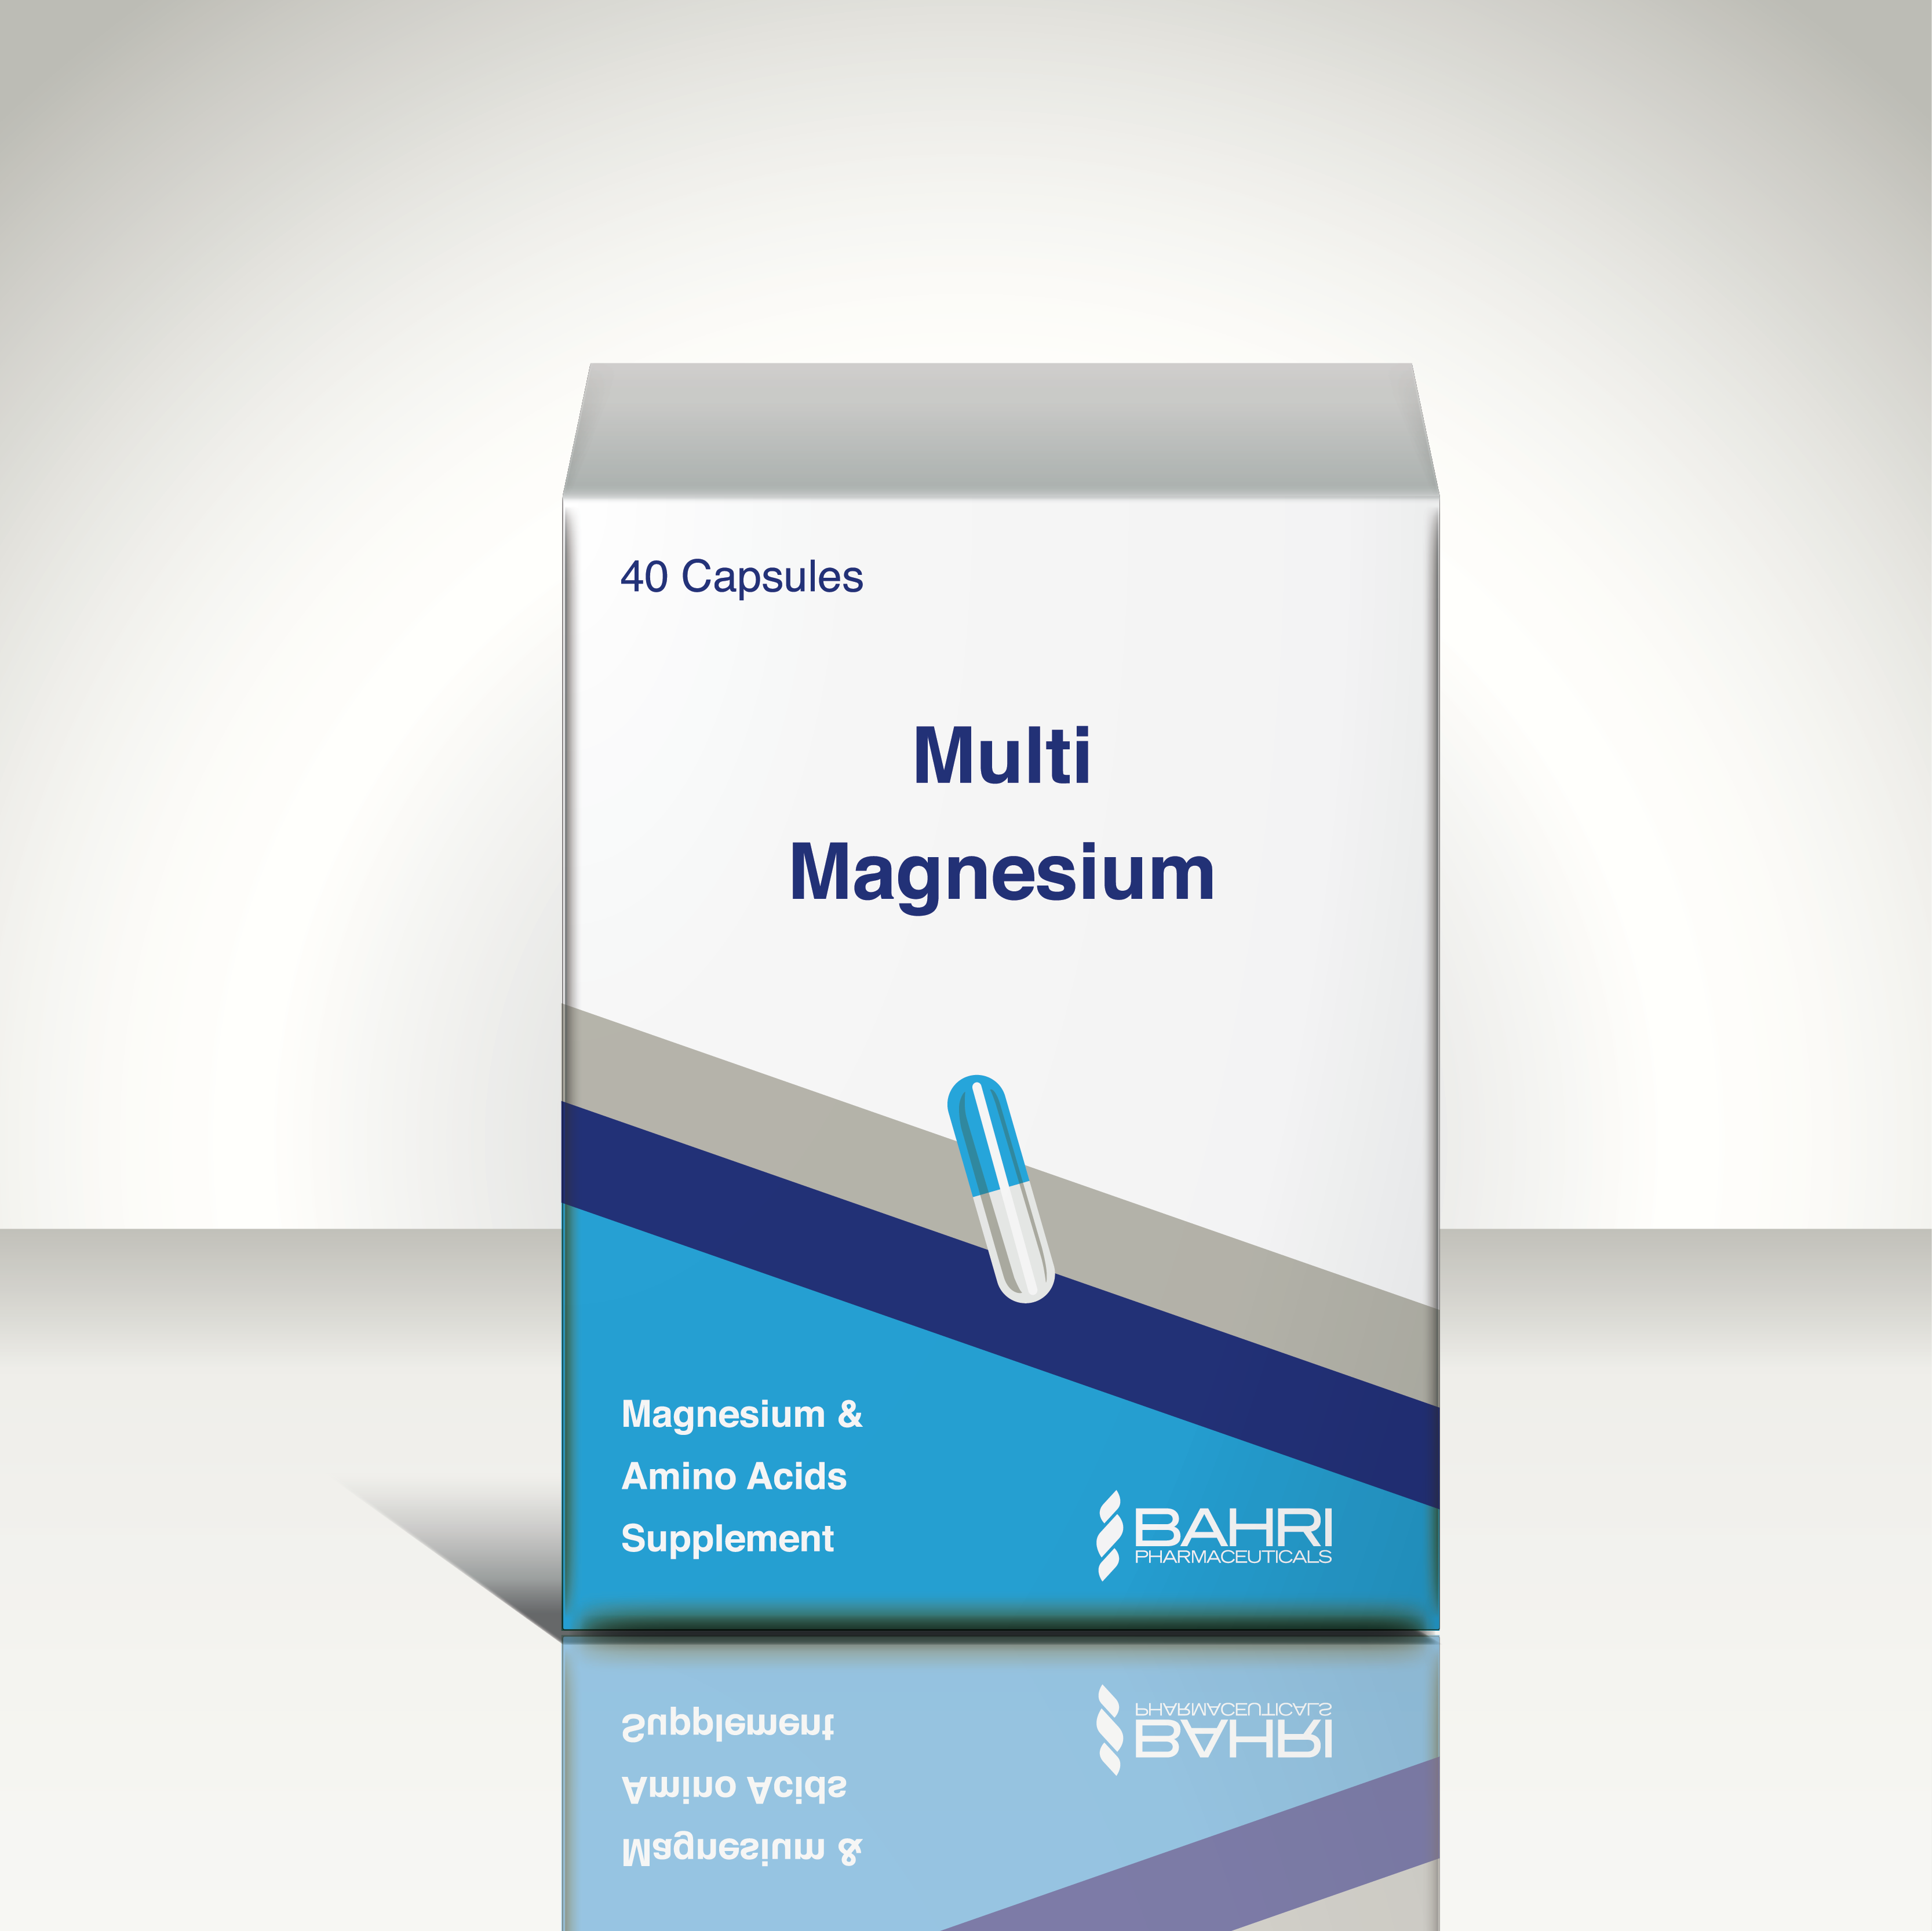 Multi Magnesium